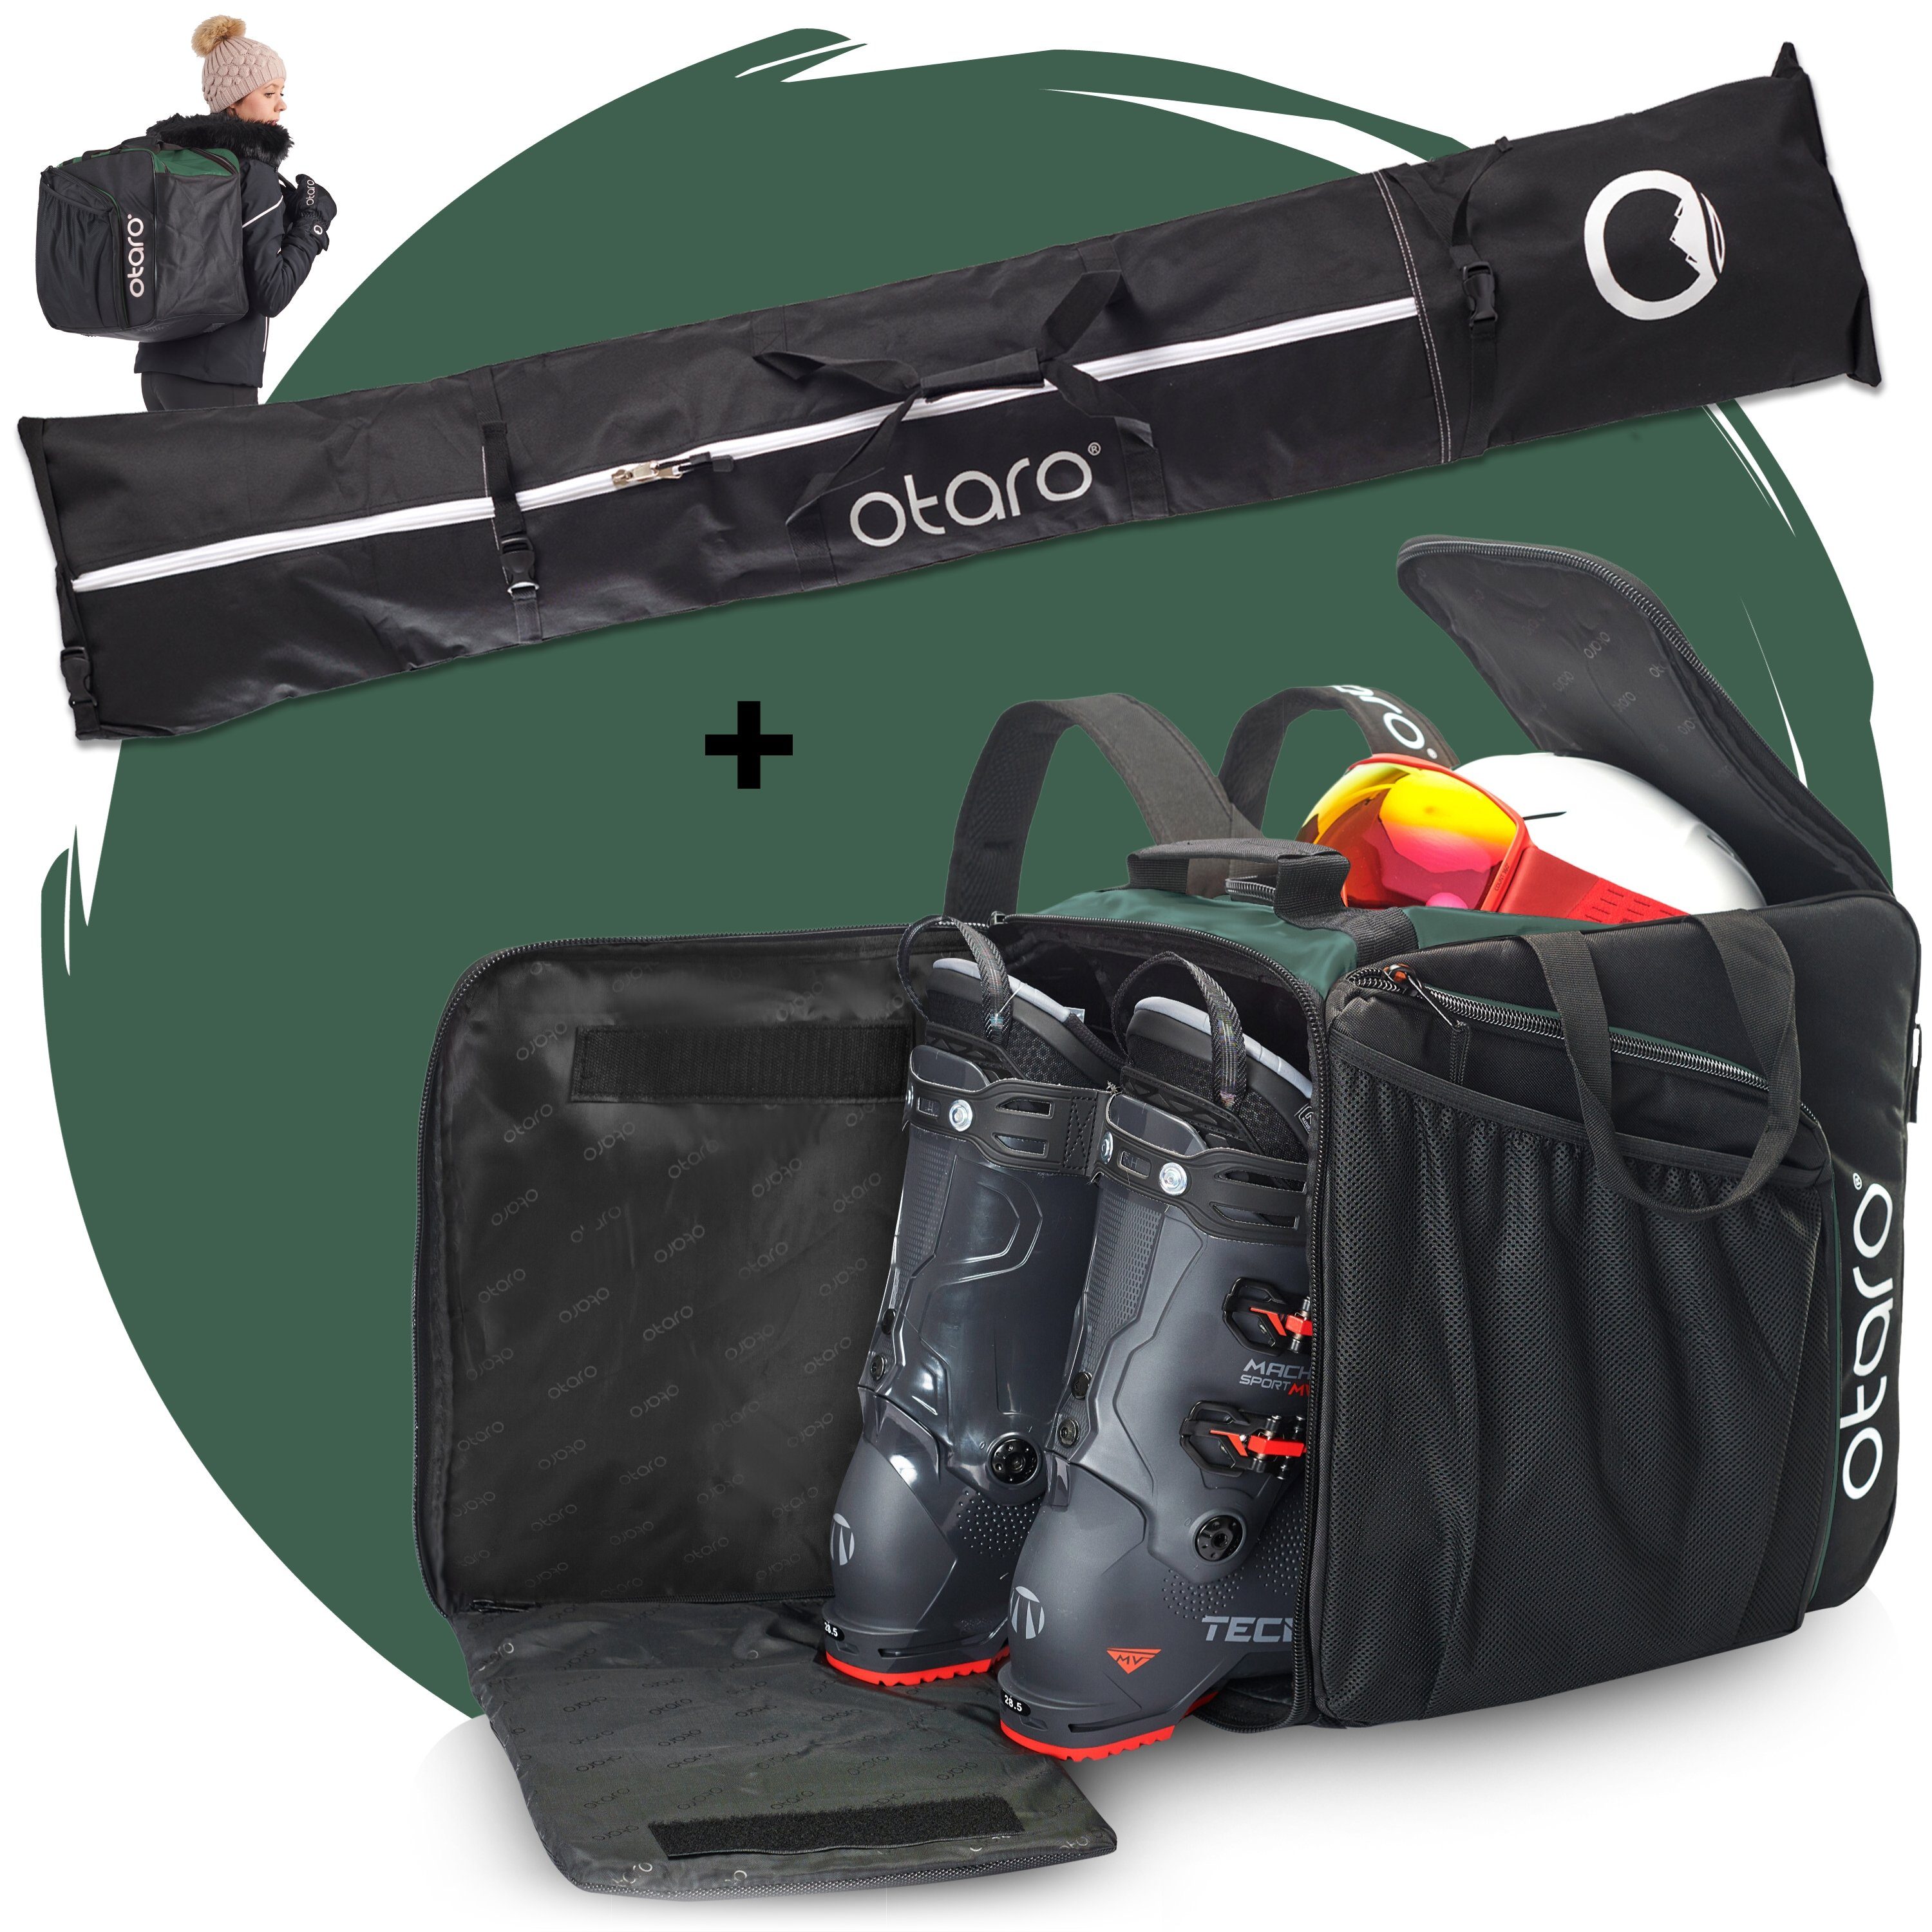 Otaro Skitasche Set: Skischuhtasche mit Schuhfach & Skitasche, Pro-Set für 2 Paar Ski (Schutz für deine Ausrüstung, Perfekt durchdacht, ausklappbare Standfläche, für 2 Paar Ski + Stöcke) Schwarz Tannengrün